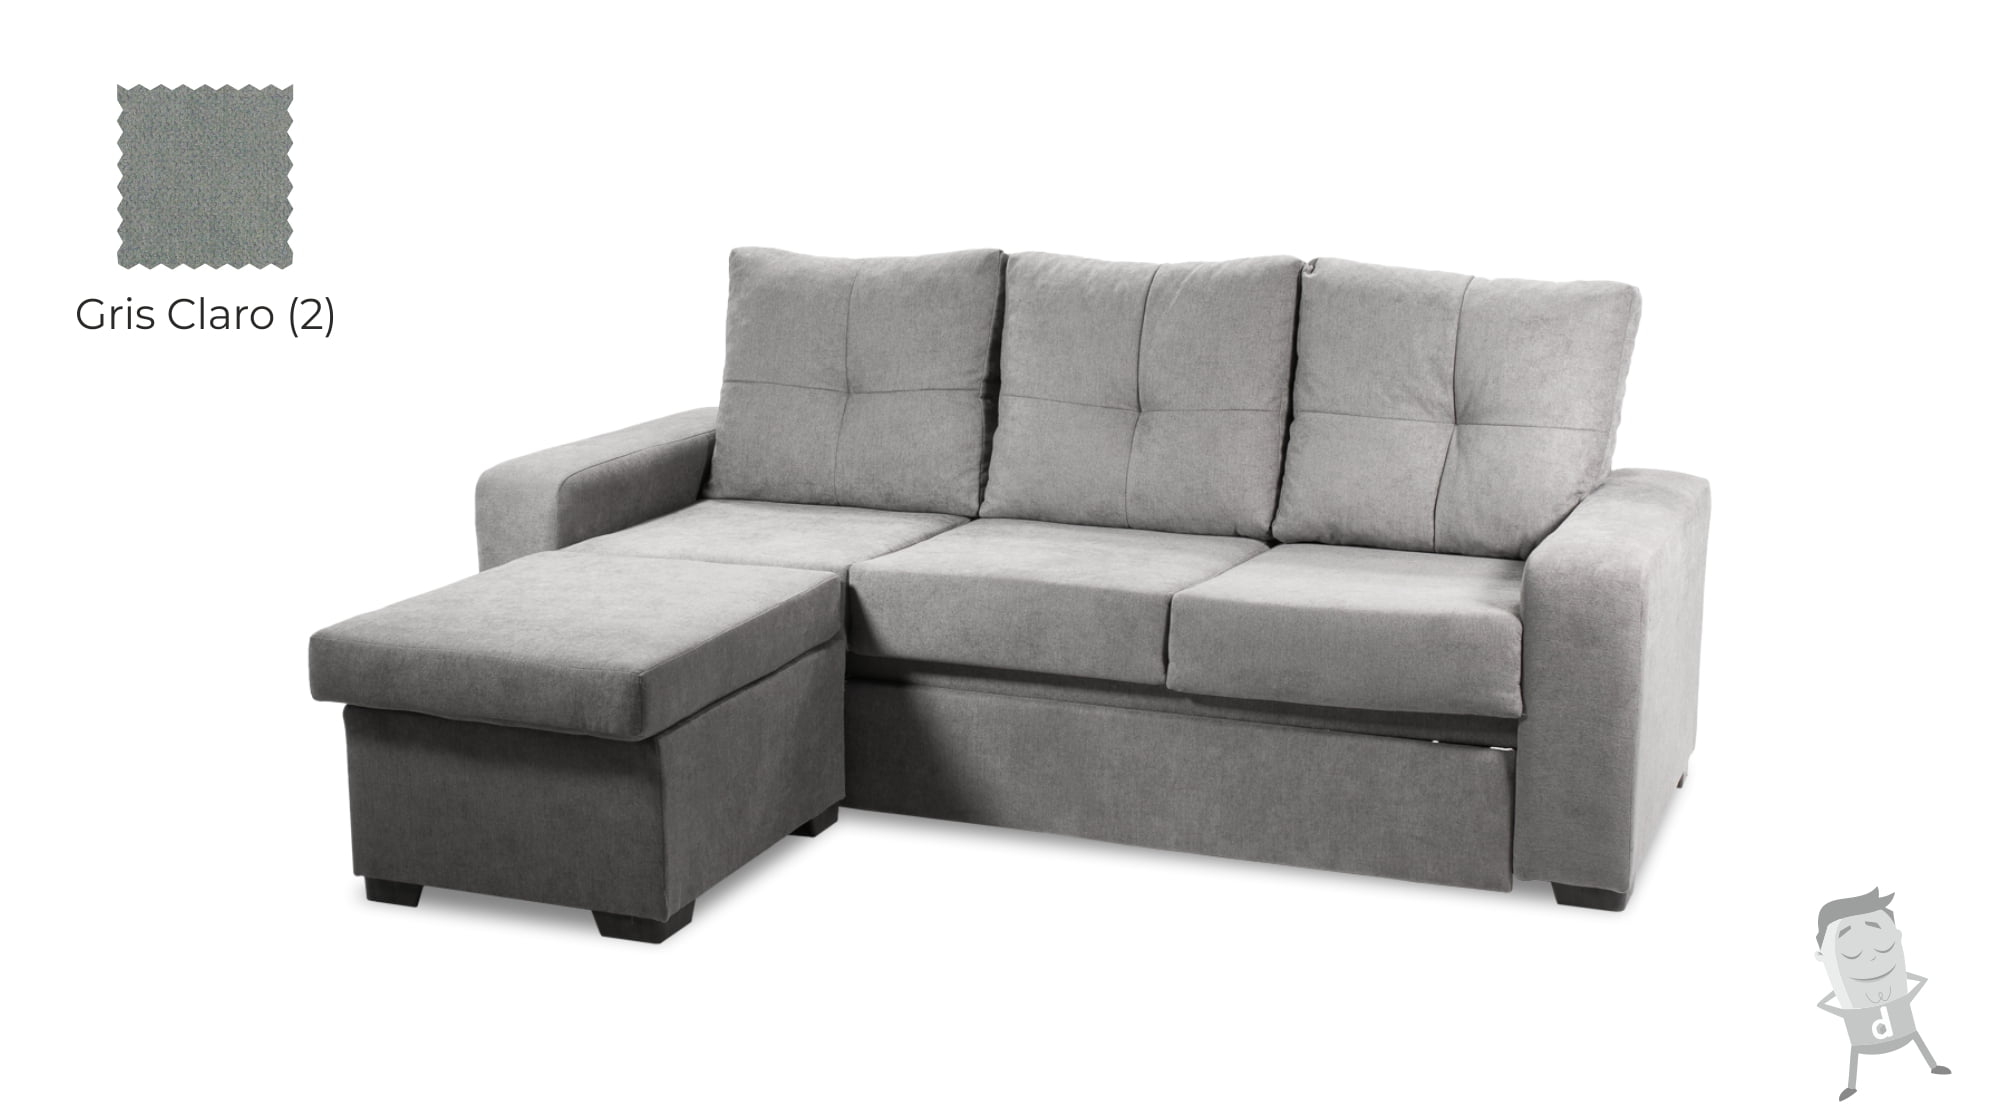 Sofás Temis sofa cama barato oferta Dormitorum Canarias gris claro